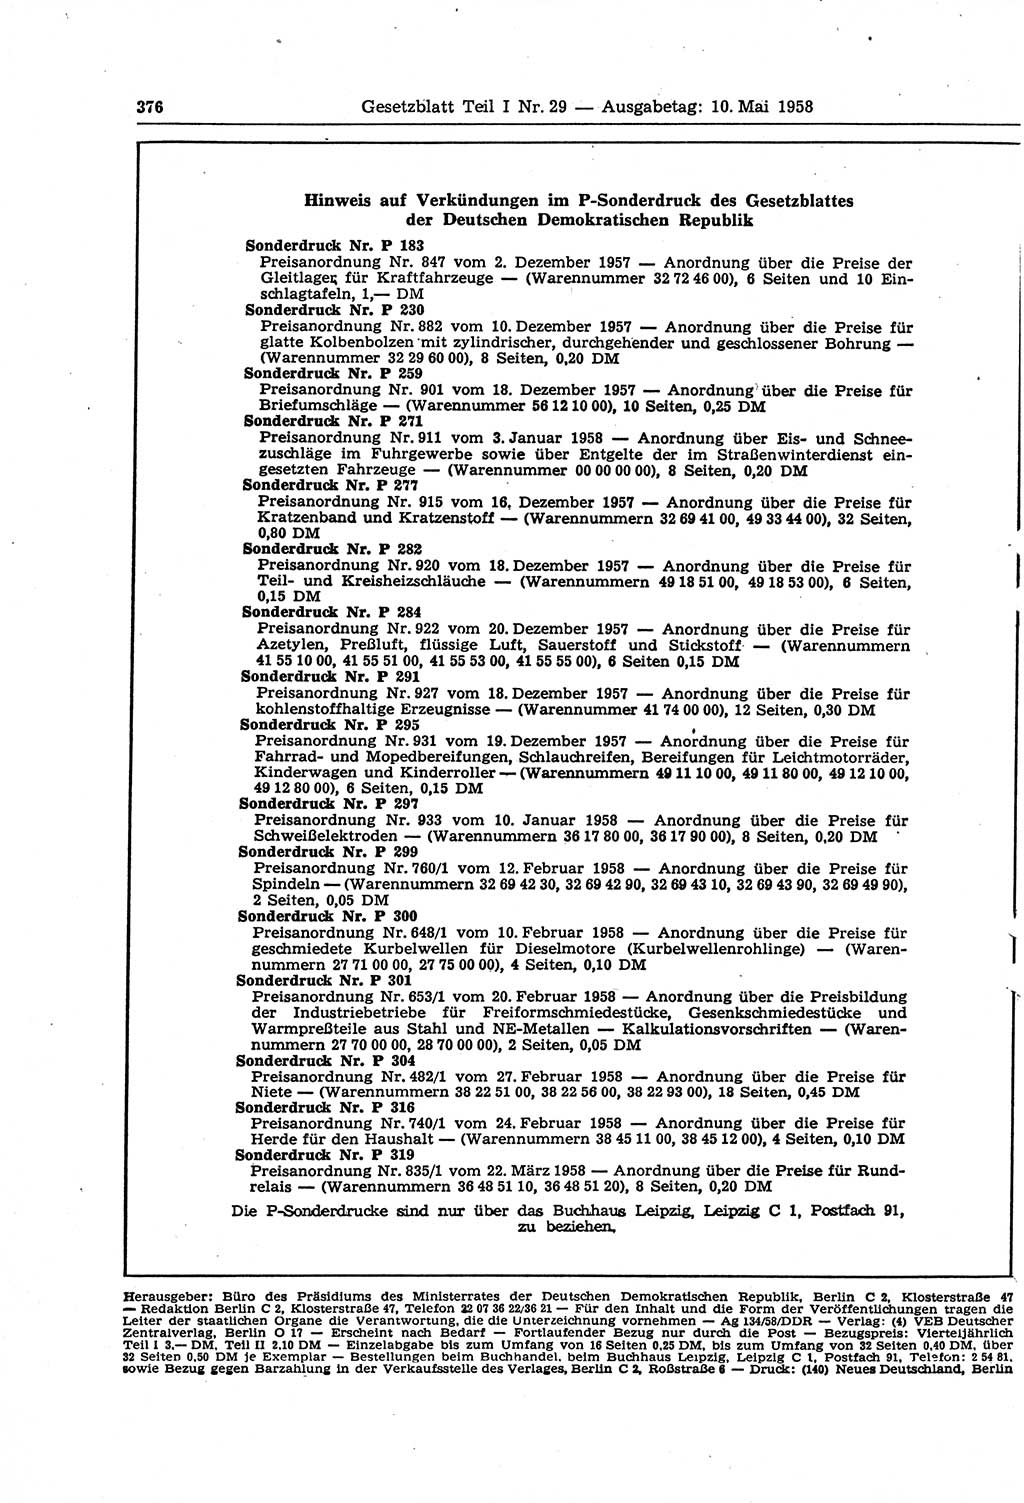 Gesetzblatt (GBl.) der Deutschen Demokratischen Republik (DDR) Teil Ⅰ 1958, Seite 376 (GBl. DDR Ⅰ 1958, S. 376)